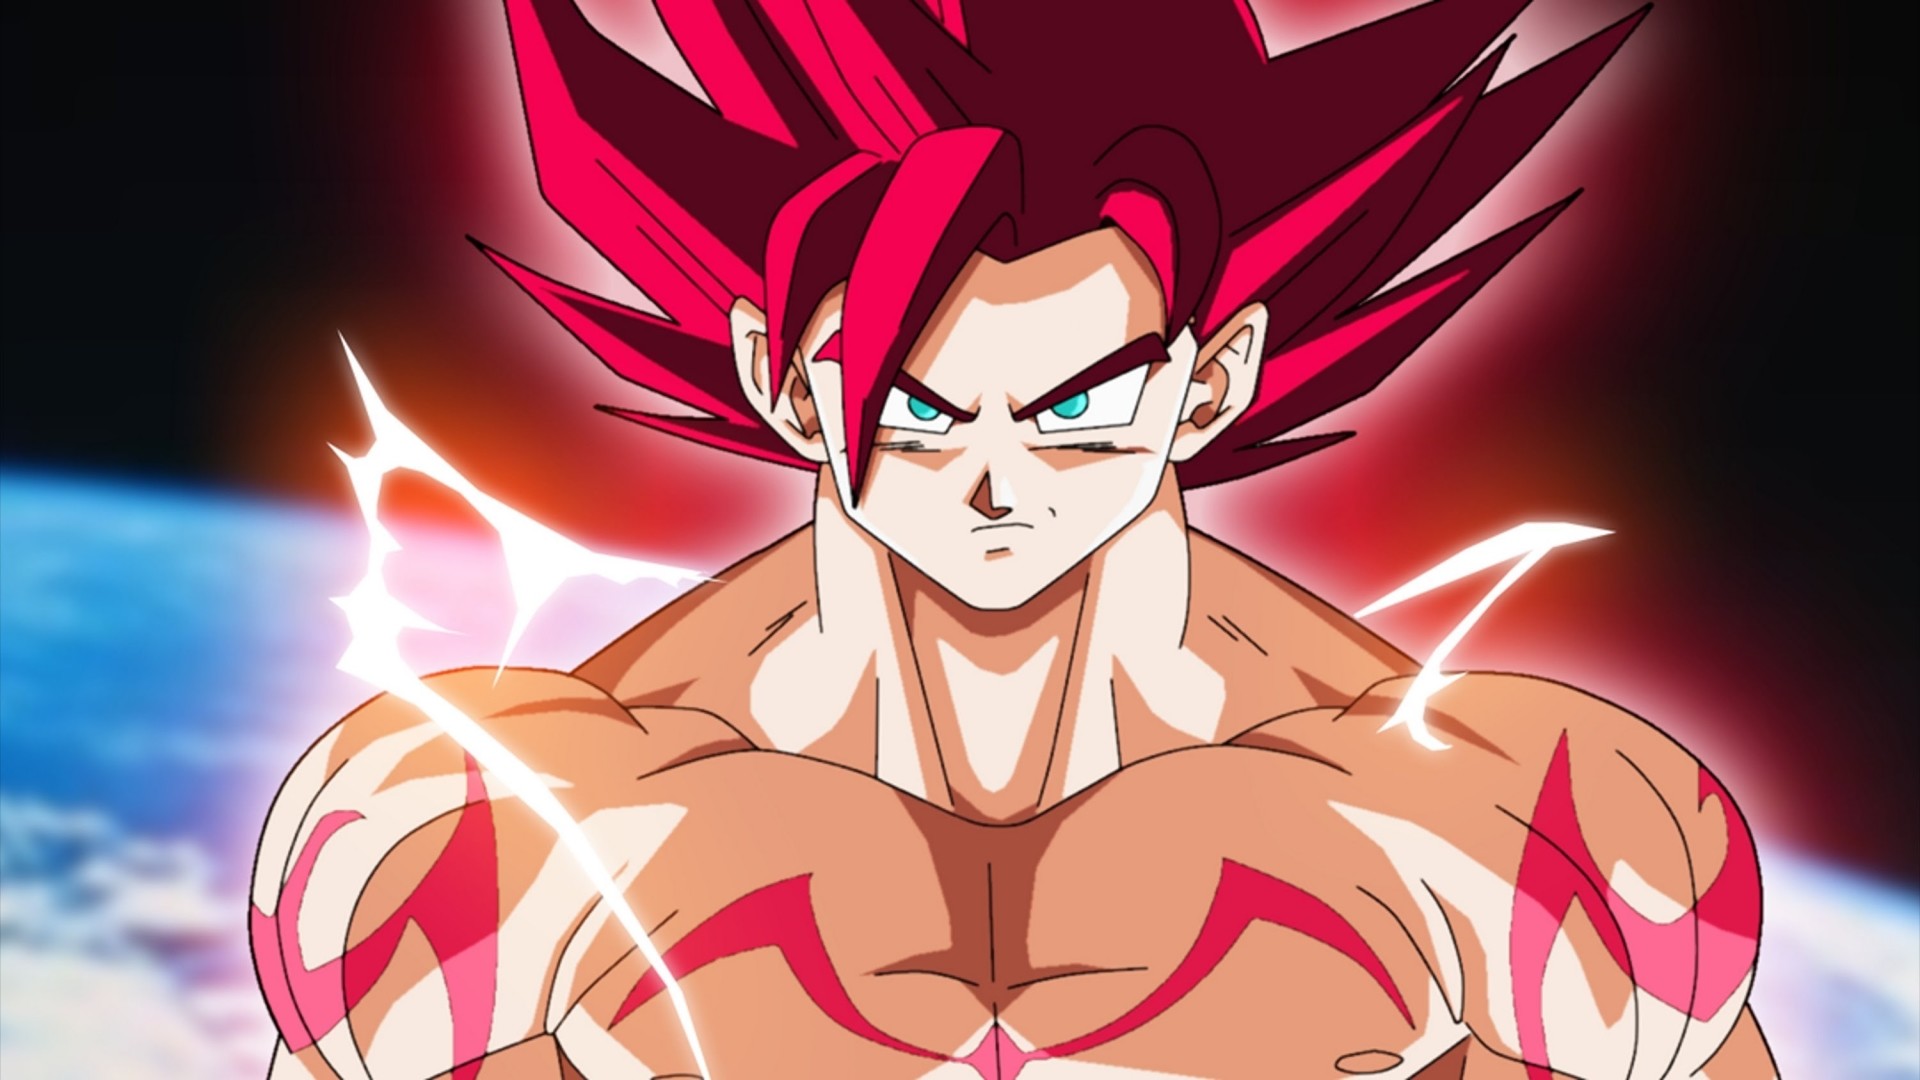 Anime Dragon Ball Super Super Saiyan God Goku Wallpaper